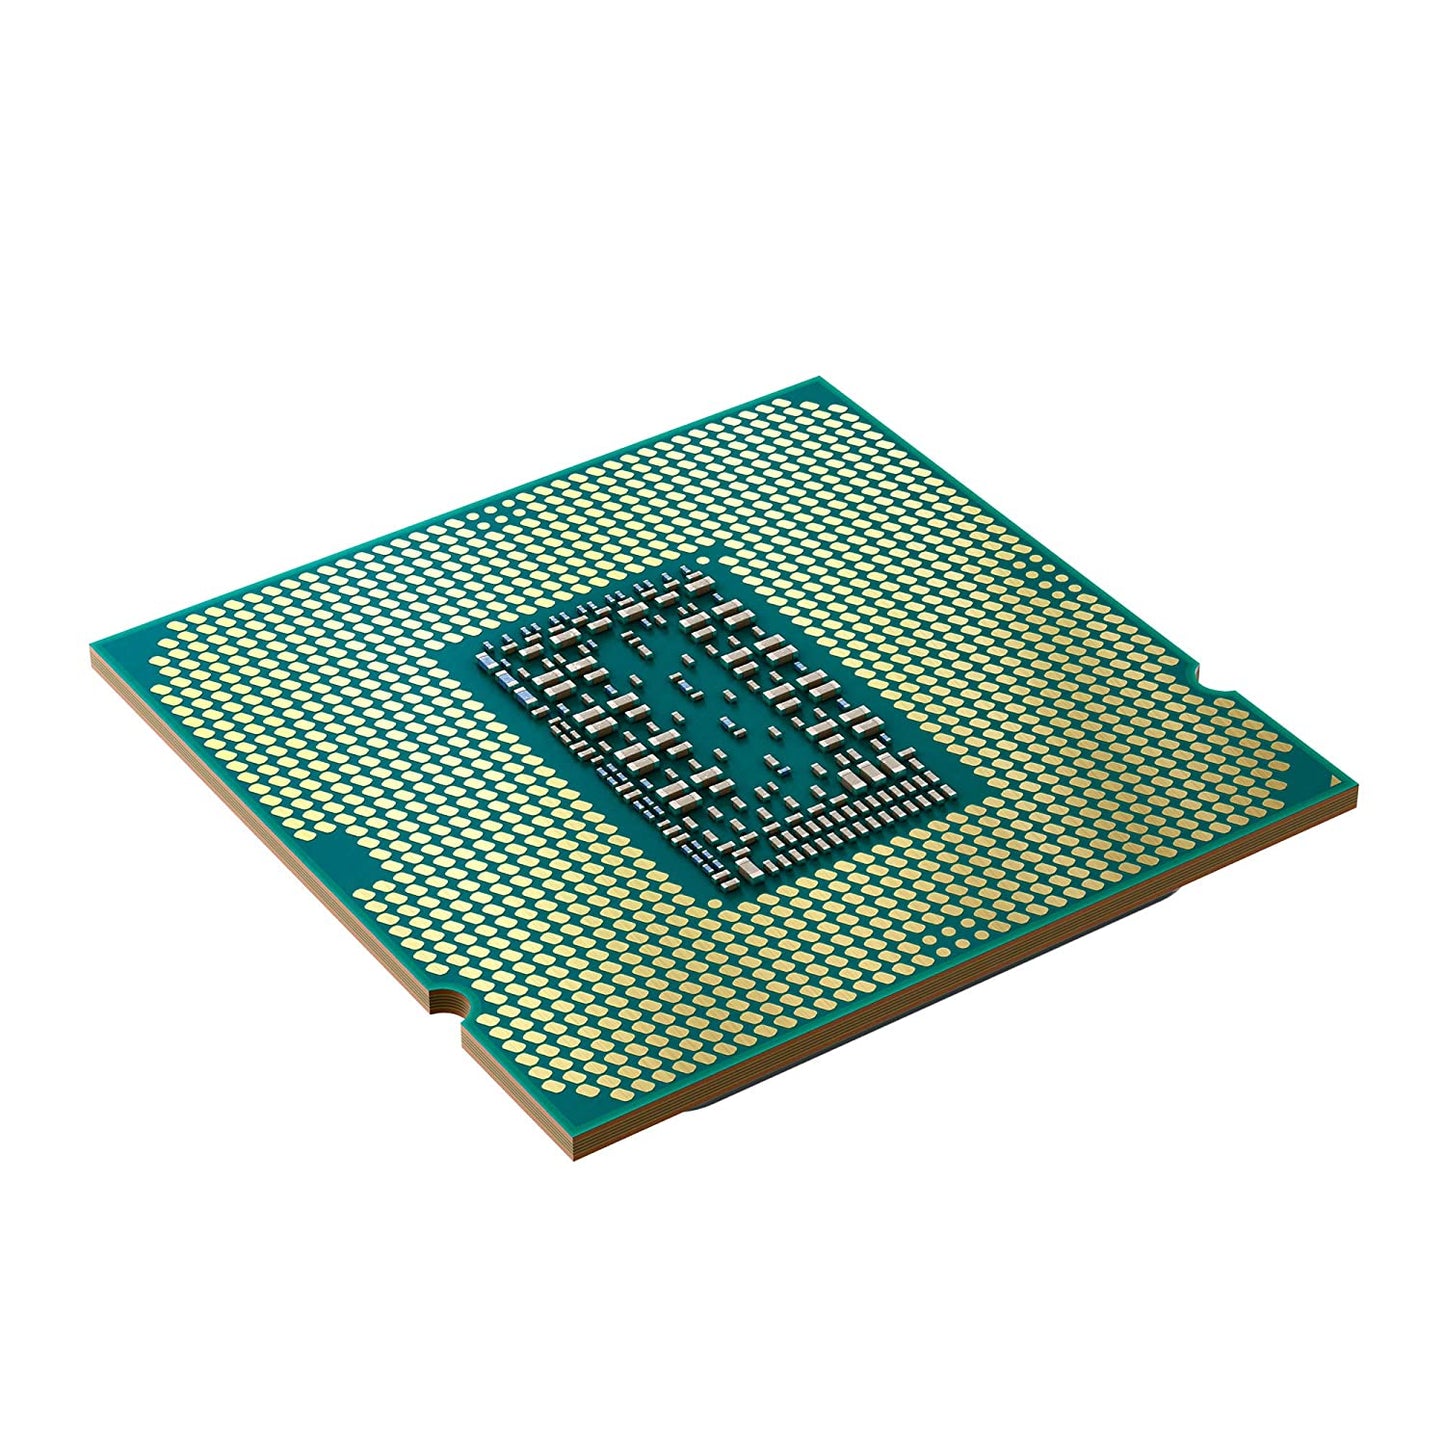 CPU-INTEL-CORE-(i9-10900K)-3.7